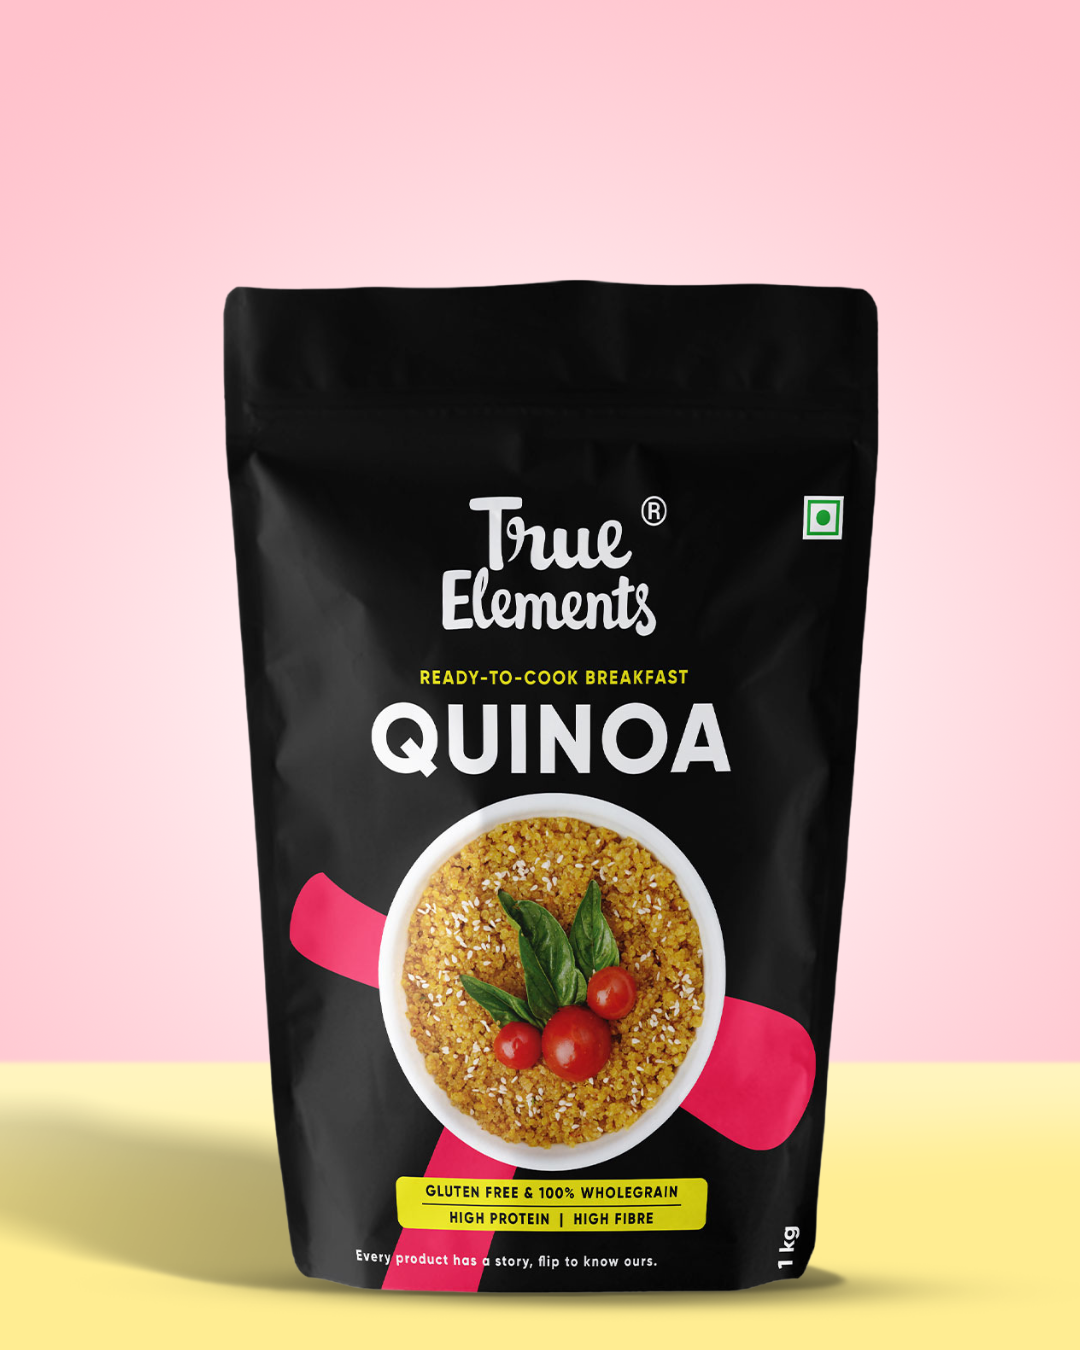 True elements Quinoa 1kg Pouch (Premium Whole Seeds)